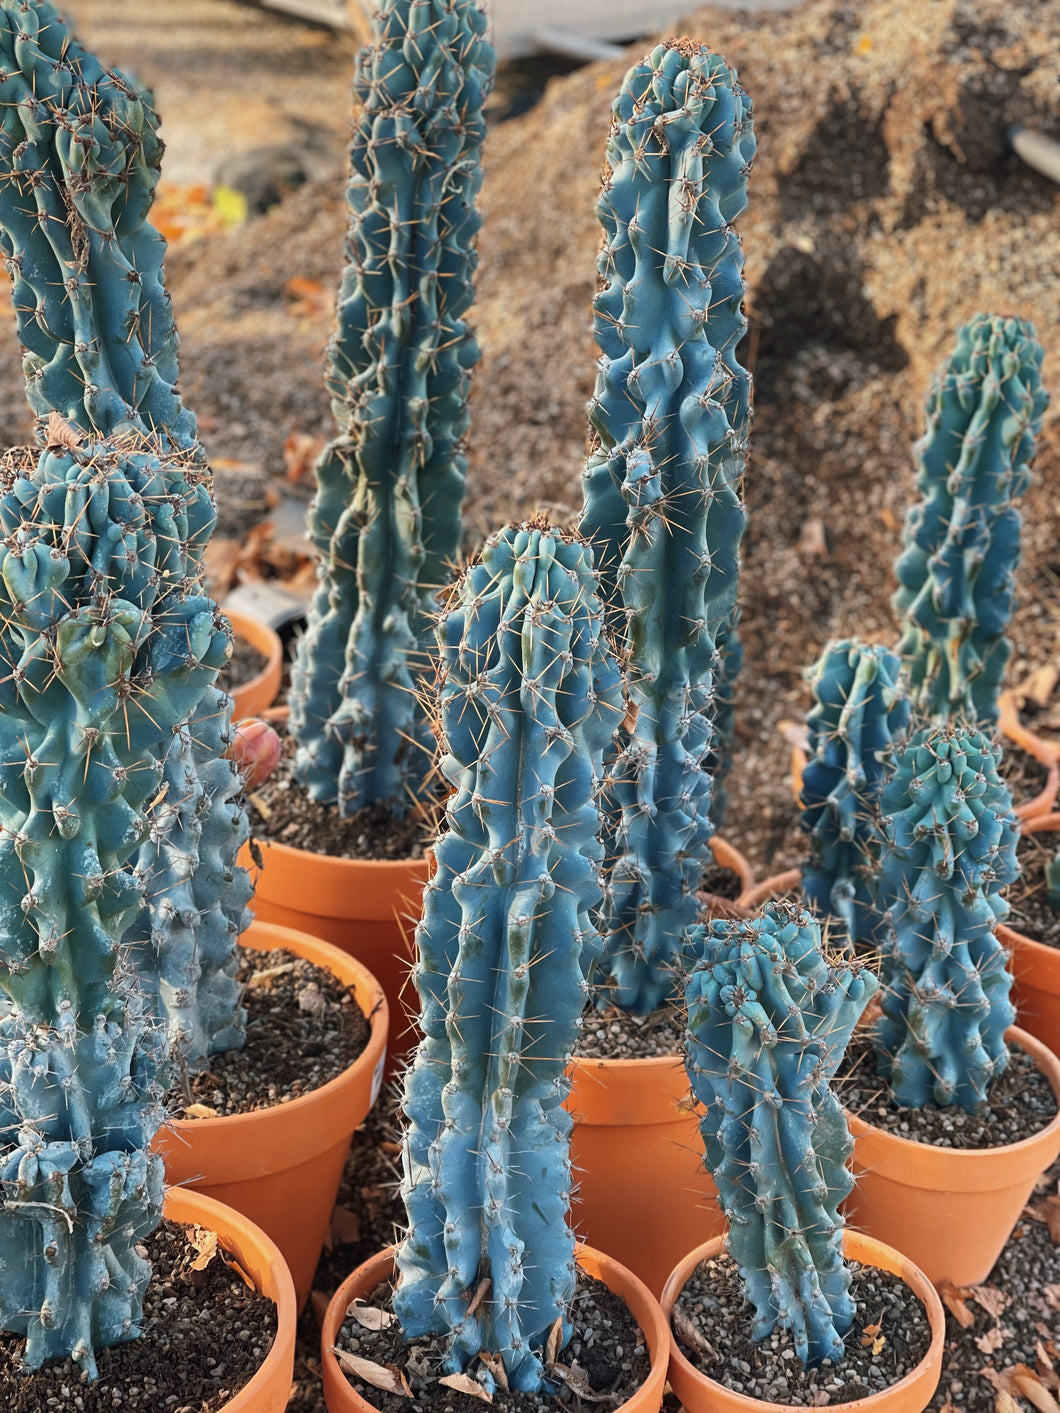 Cereus Blue “Peruvian apple” monstrose cactus